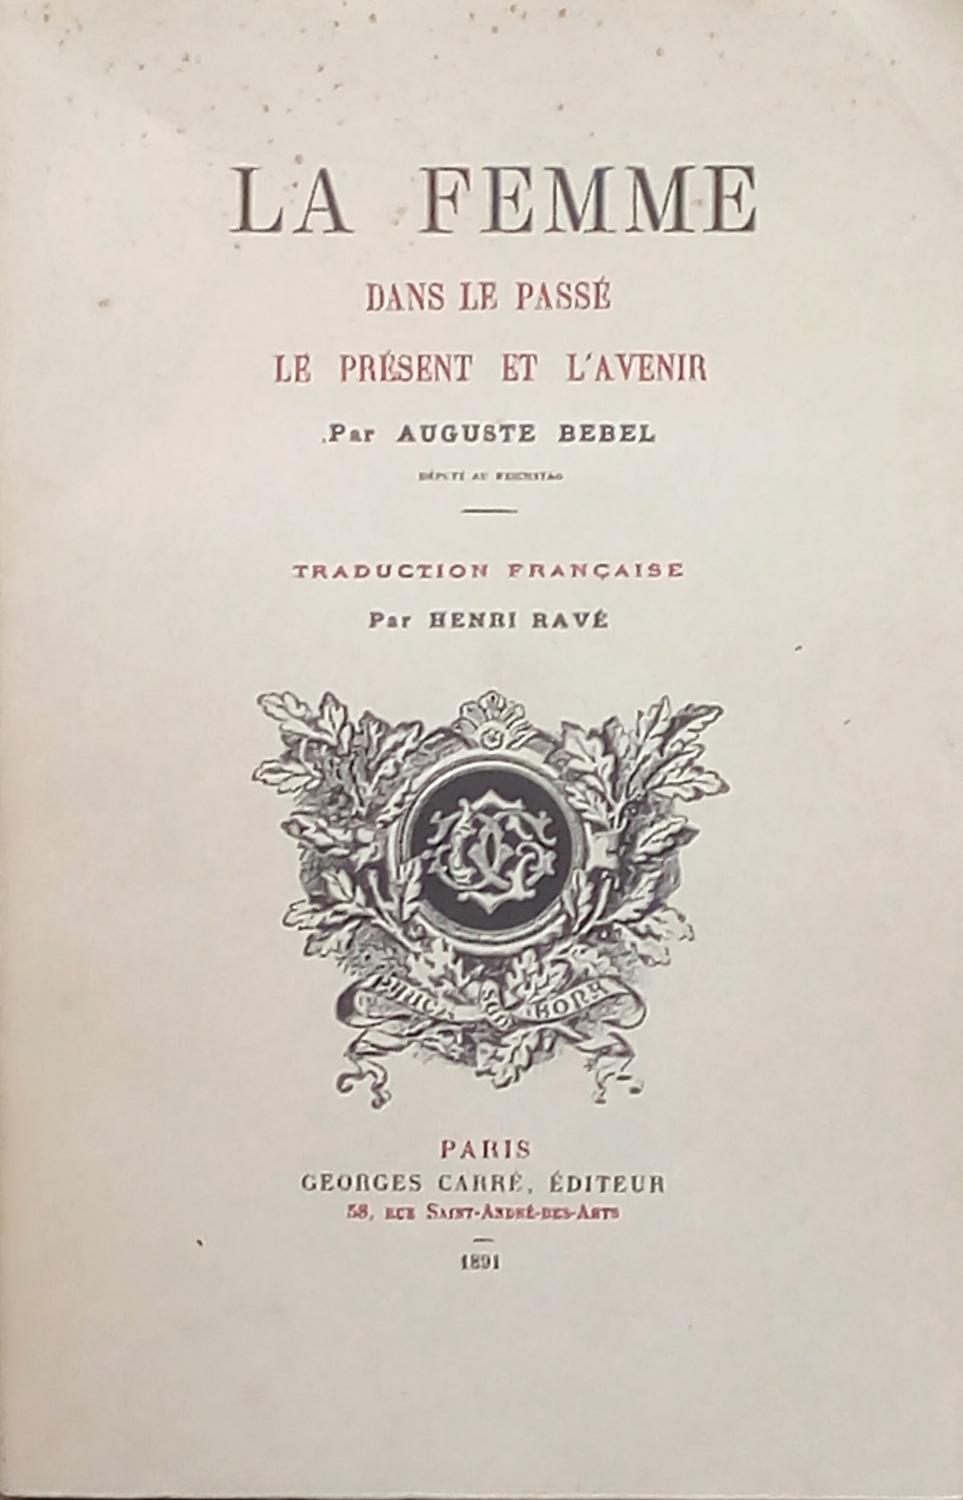 La Femme Dans Le Passe Le Present Et L Avenir By Auguste Bebel Bon Broche 1971 Bouquinerie L Ivre Livre